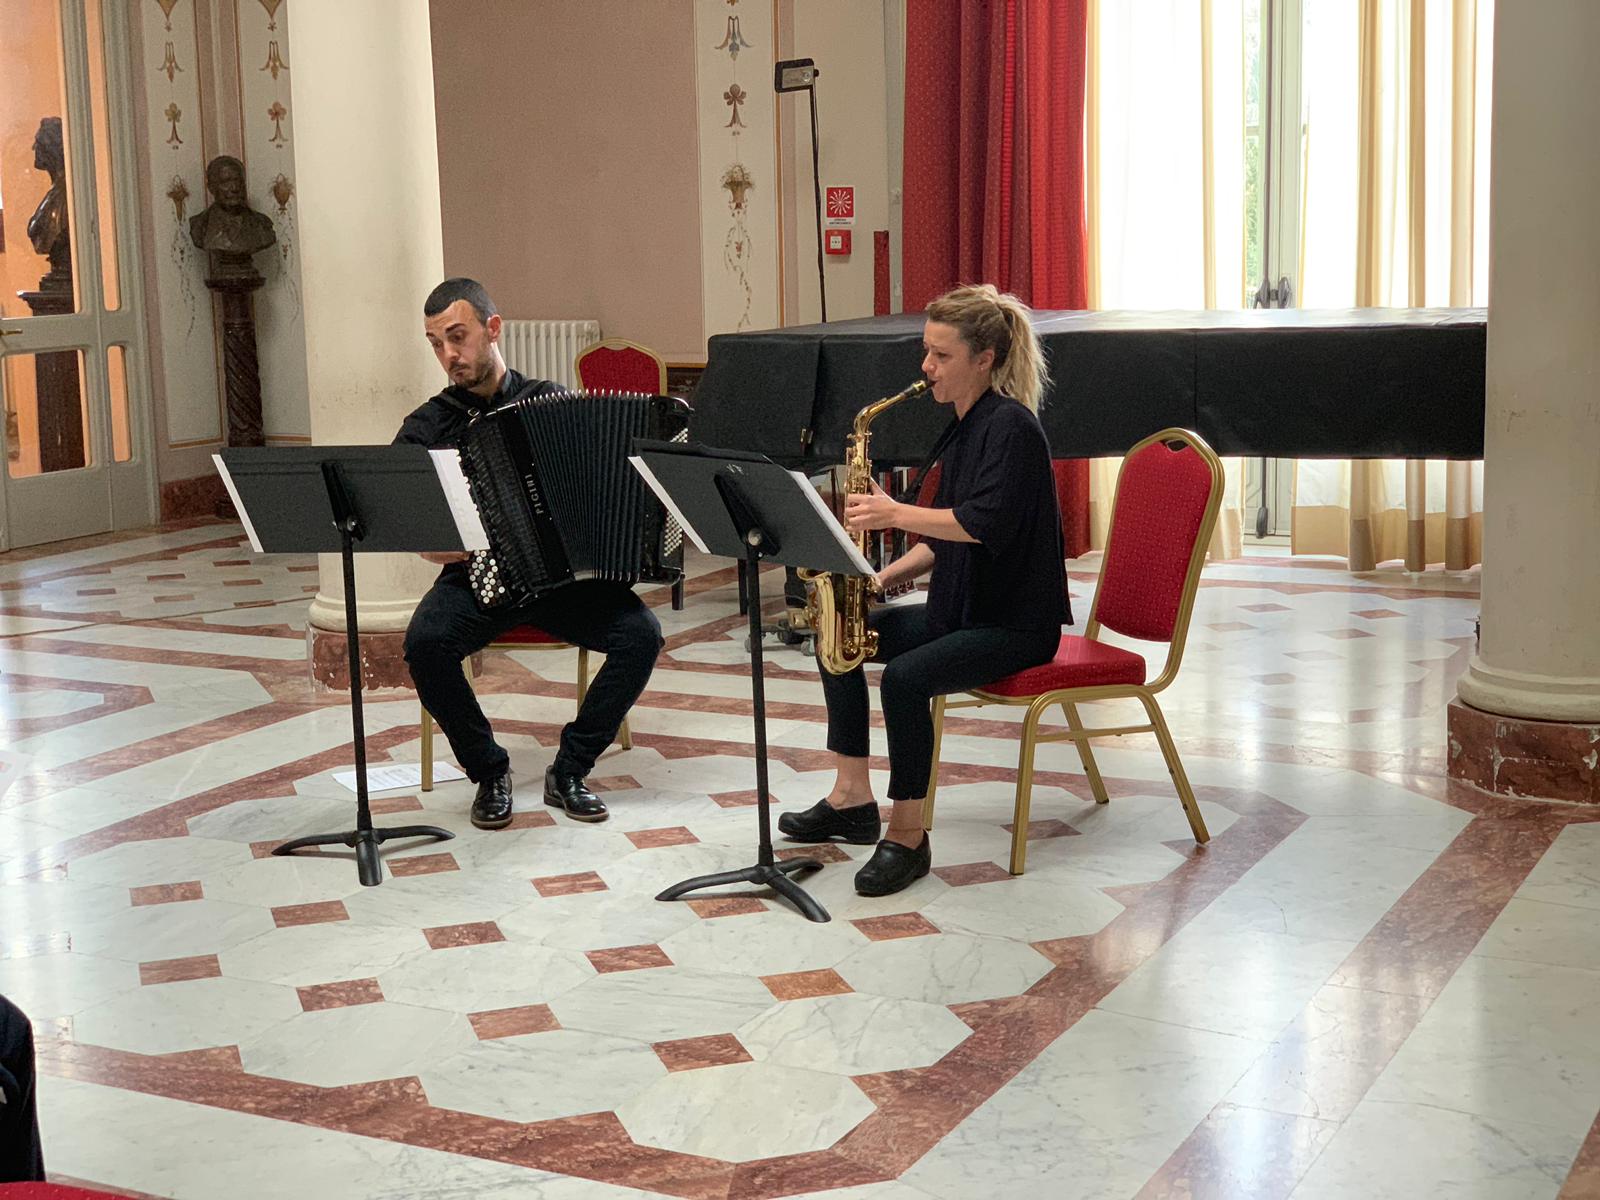 Musica al San Donato, domenica 10 novembre in concerto il Duo Comancita   